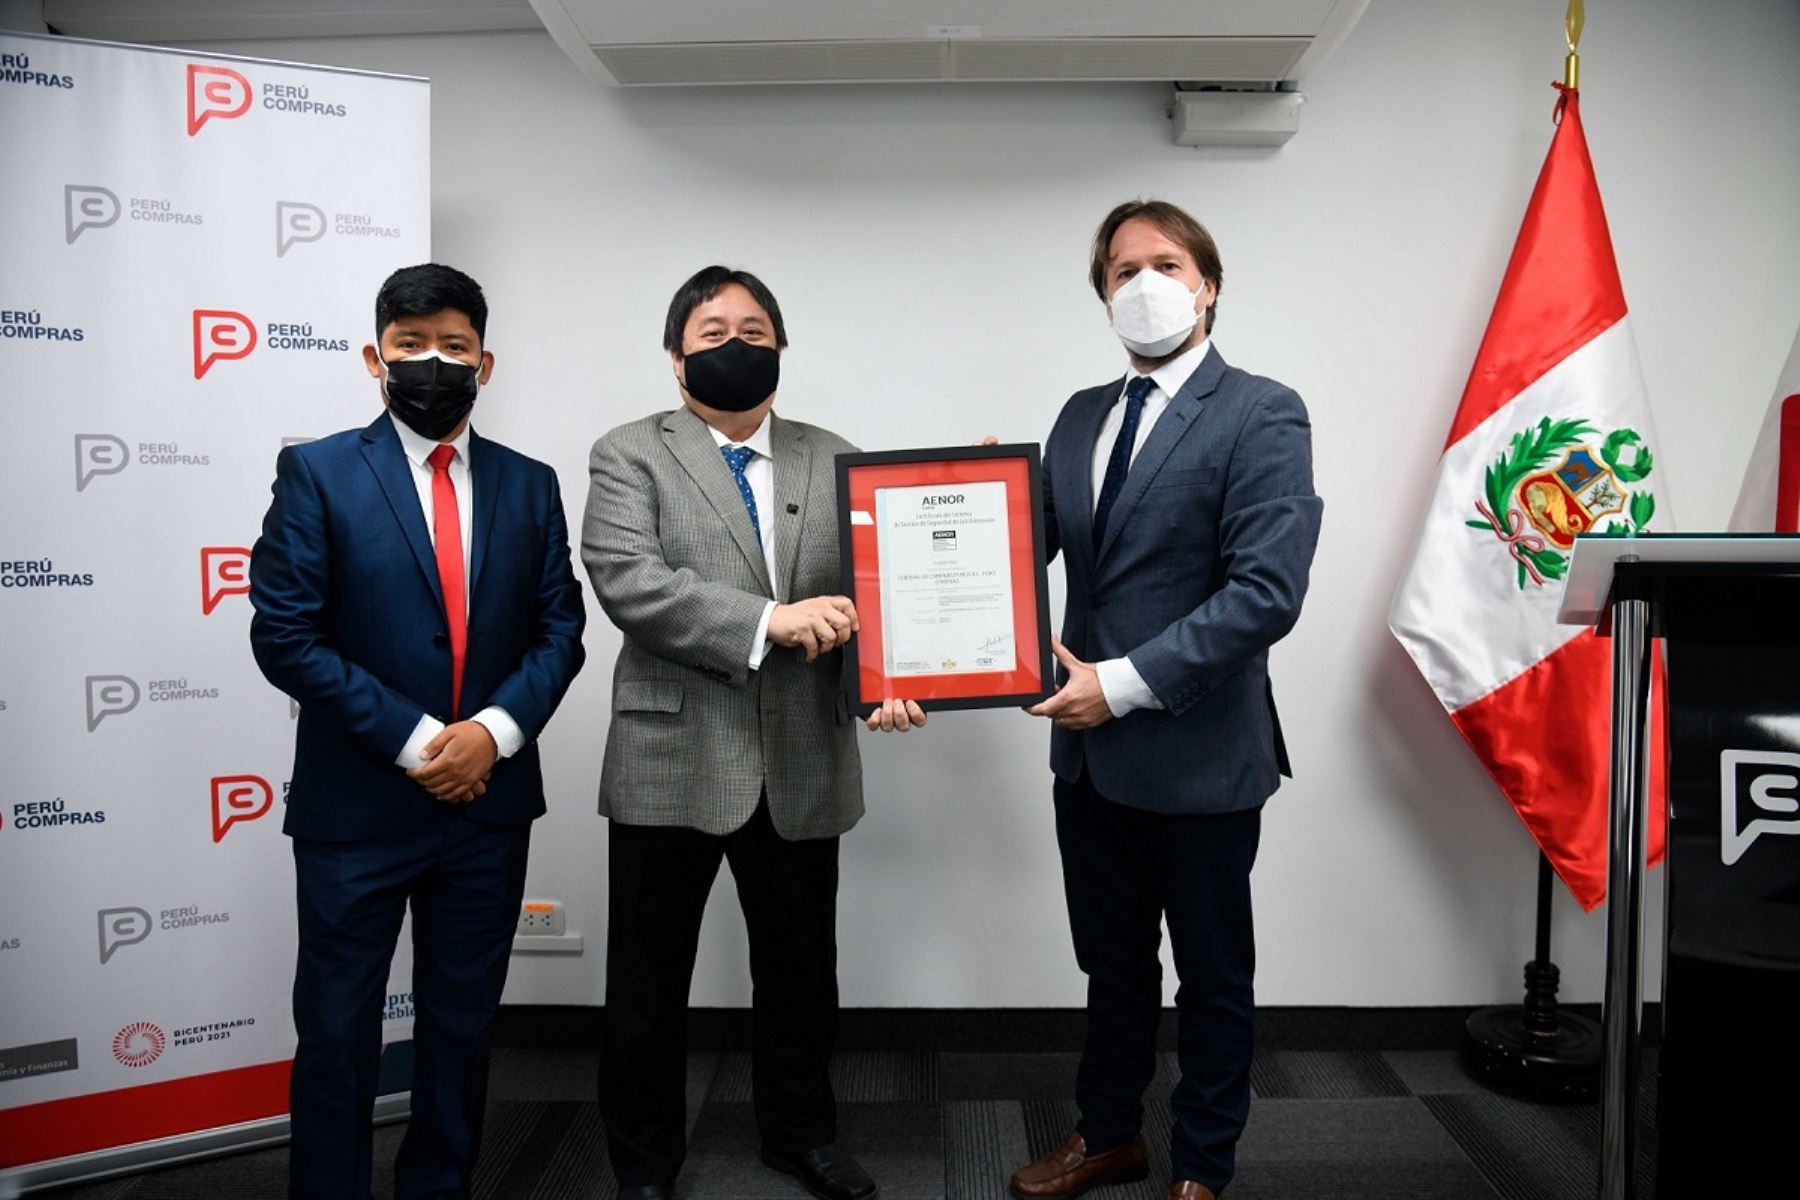 Jefe de Perú Compras, Fernando Masumura Tanaka, recibe la certificación ISO 27001 para su institución. Foto: Cortesía.